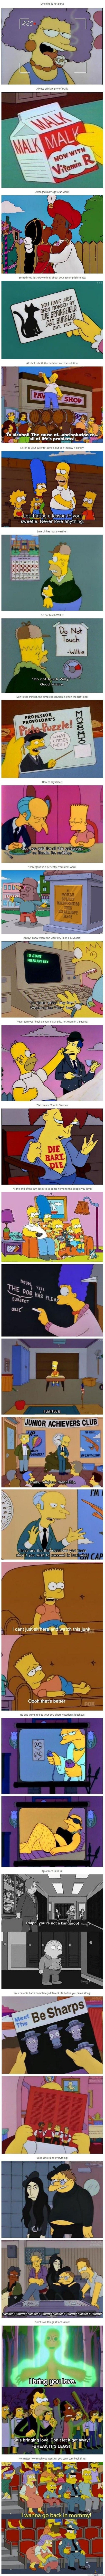 Simpsonit opettaa